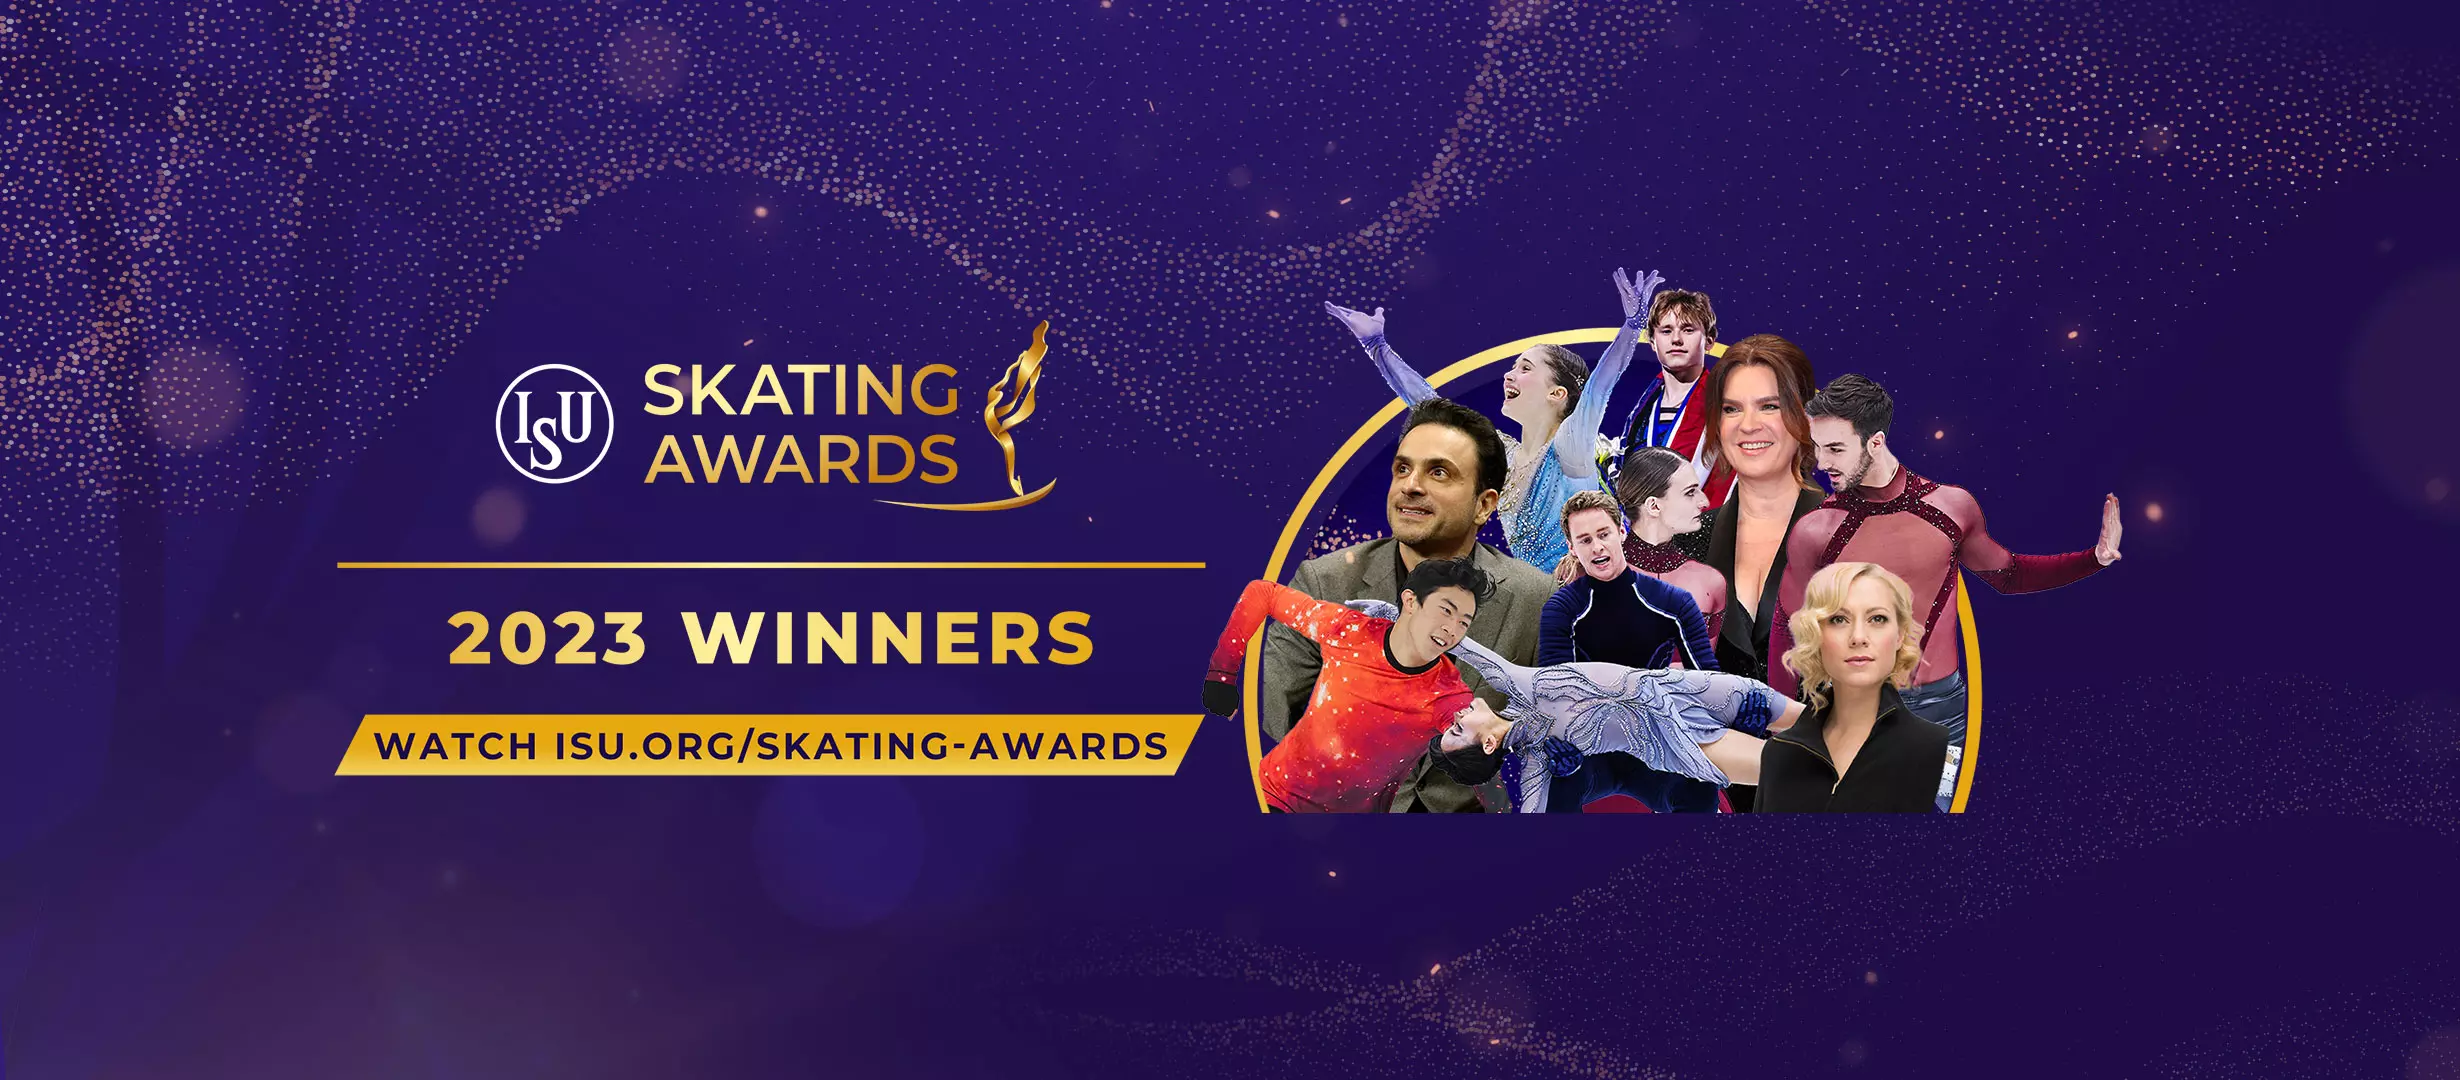 Skating Awards Facebook Header Winners 2023